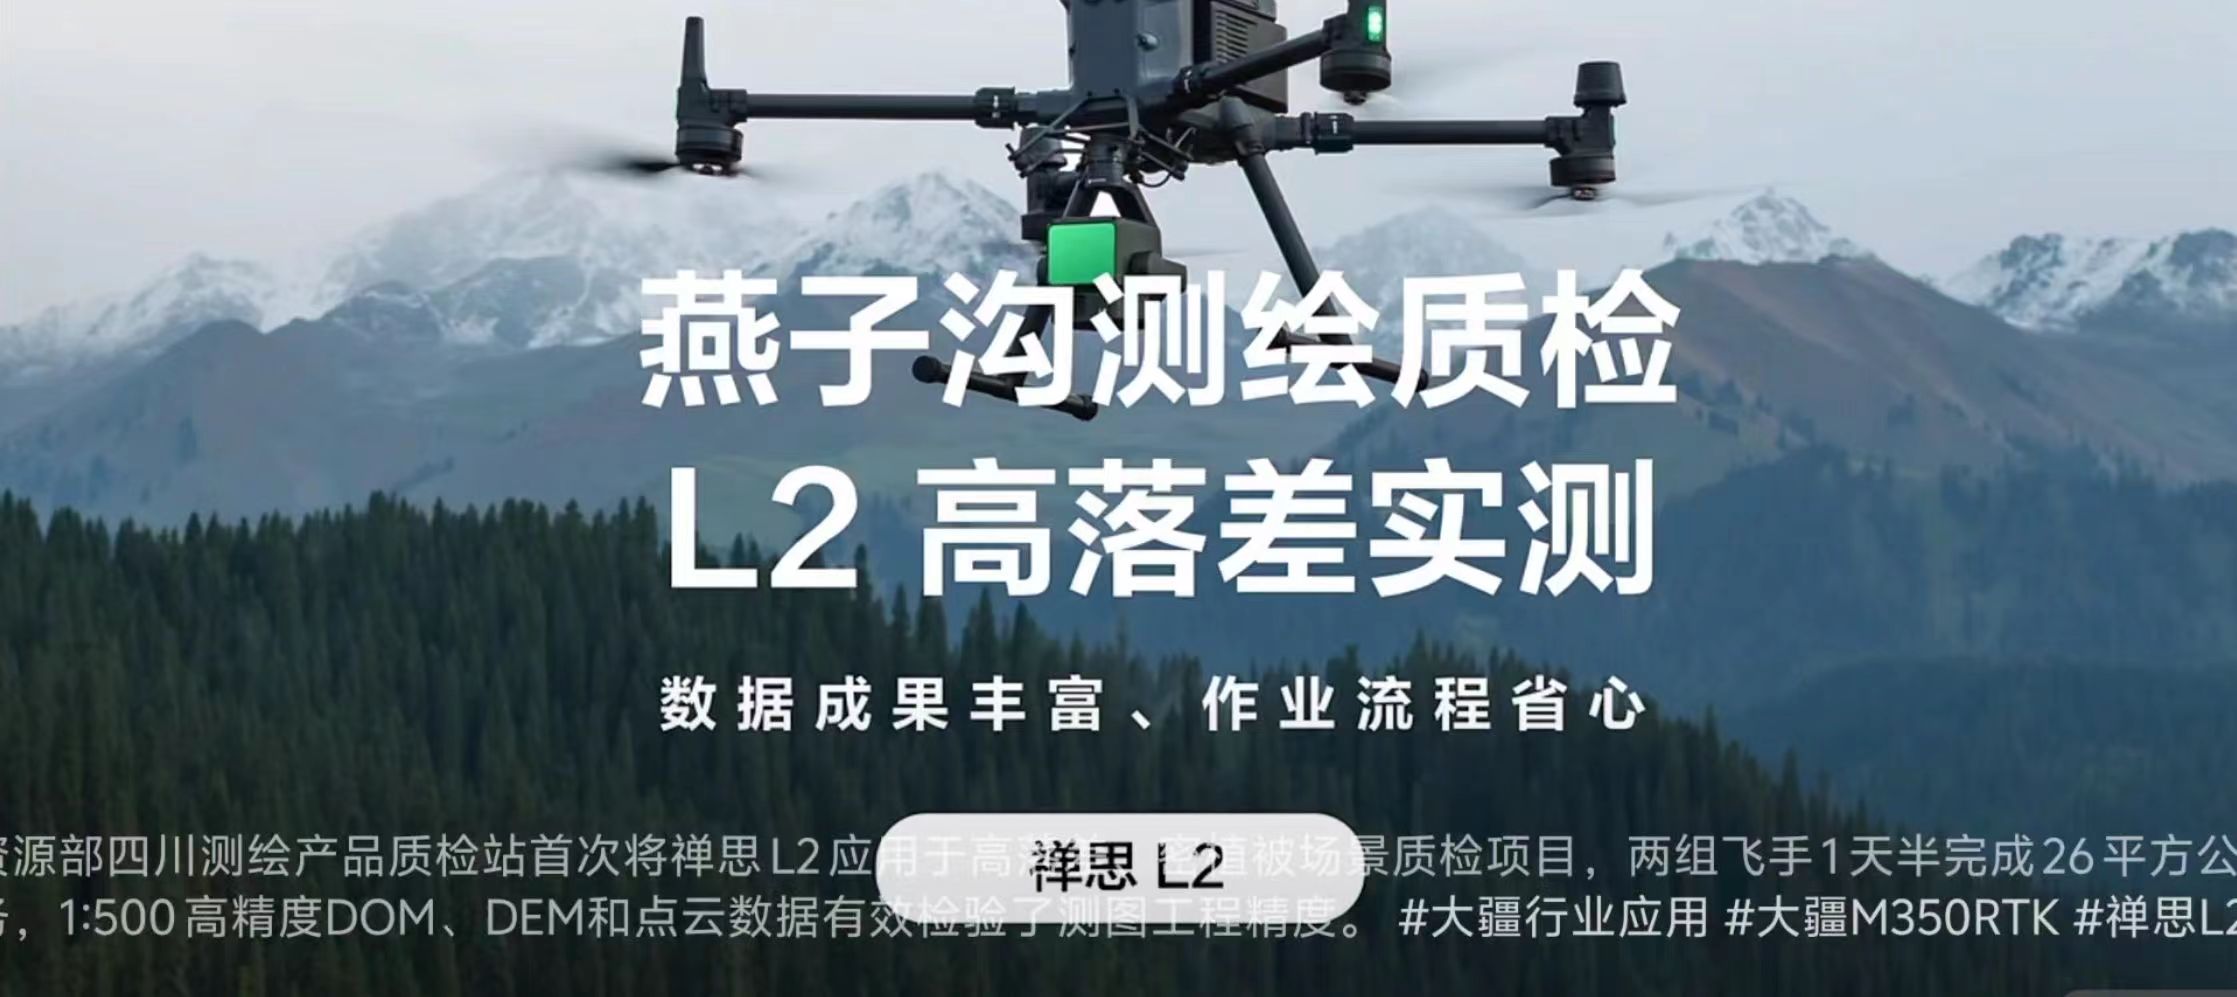 大疆無人機搭載L2實測